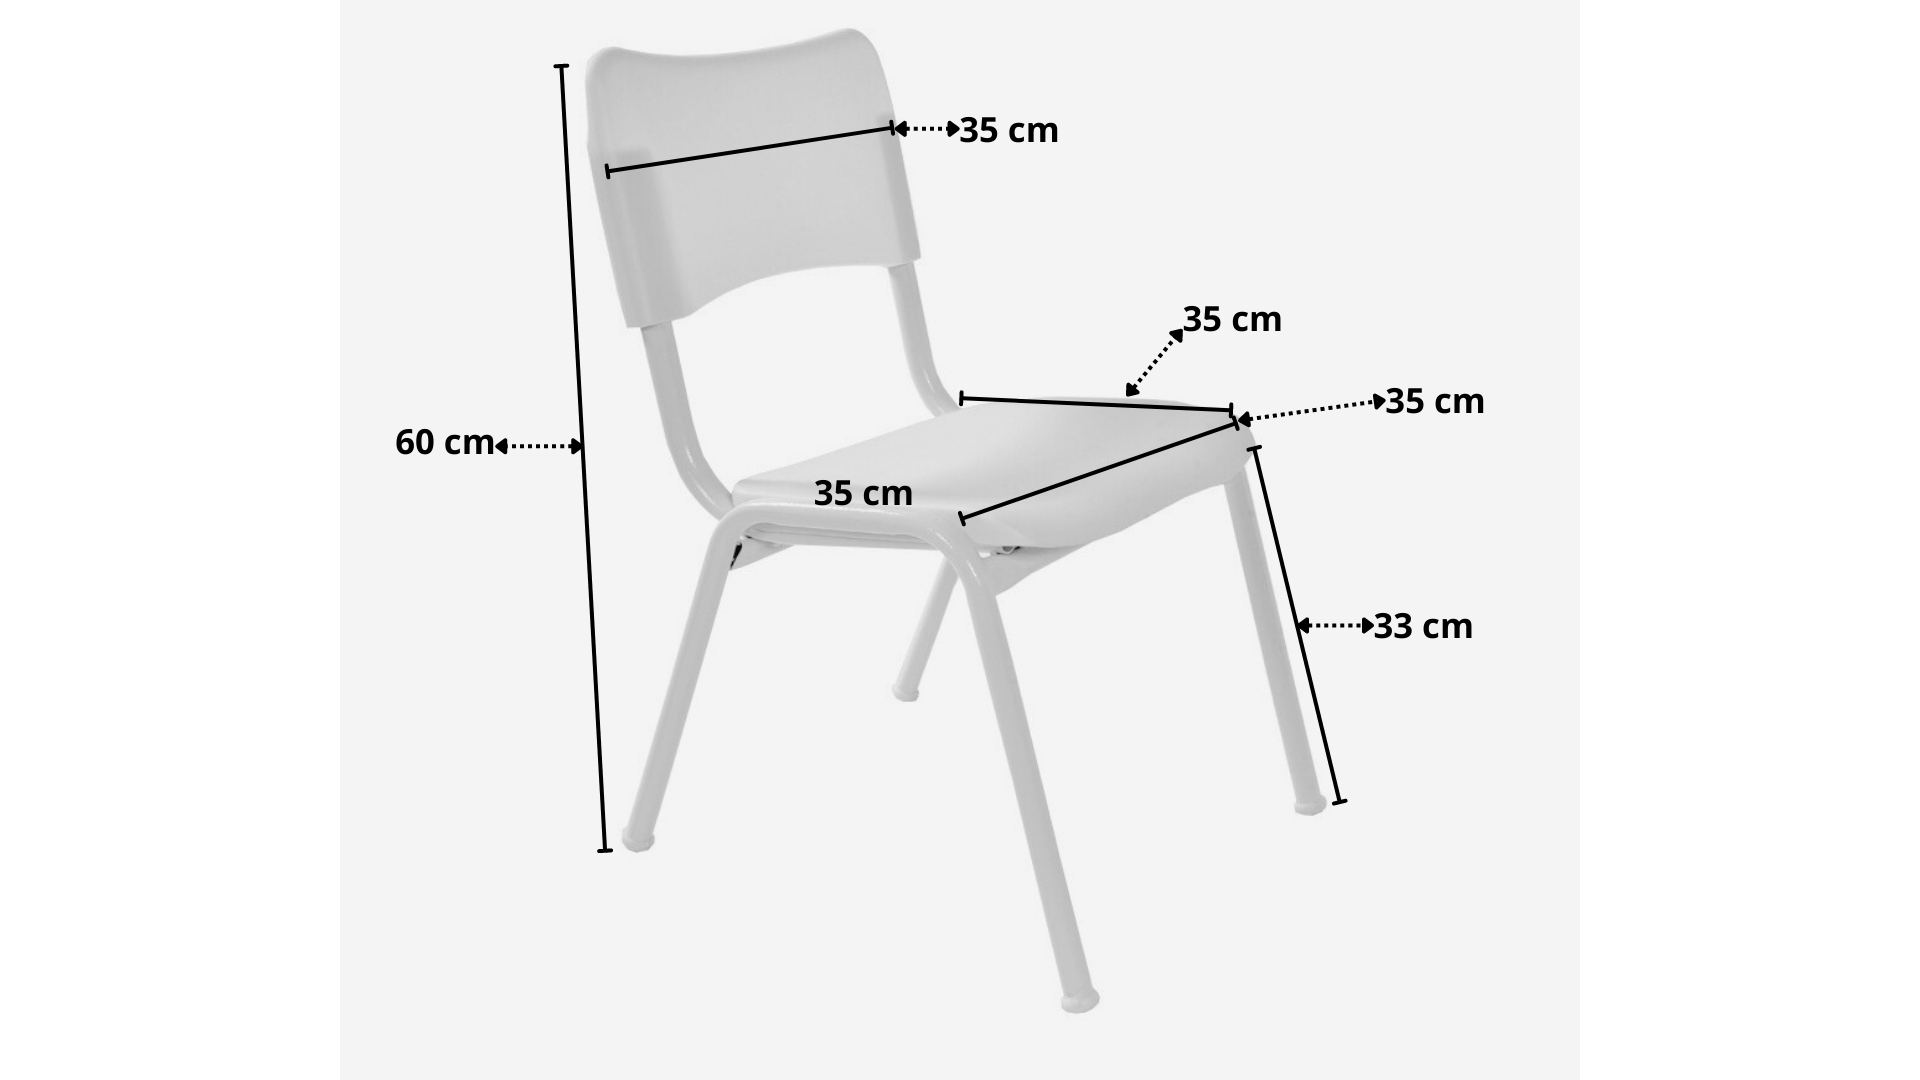 Mesinha Infantil Tampo Mdf Branco C/4 Cadeiras Color Fnde - 9